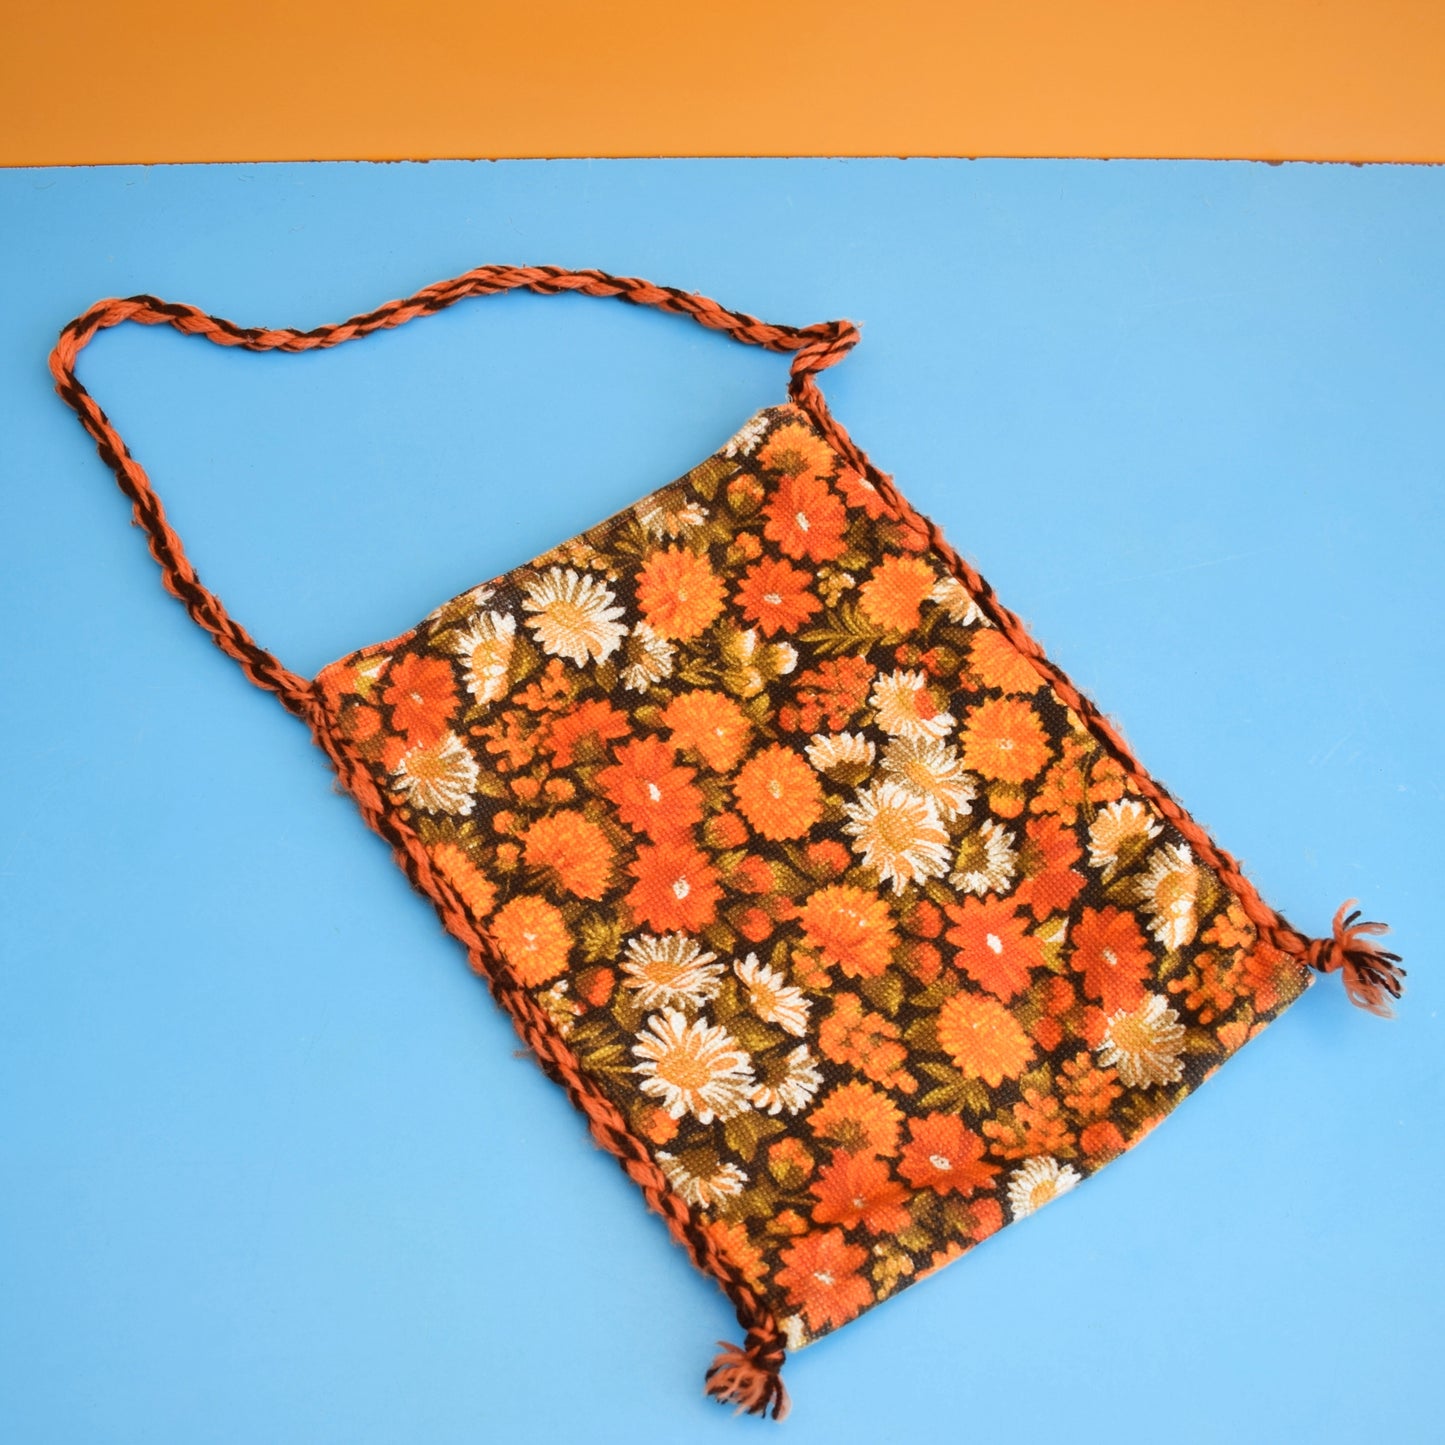 Vintage 1970s Shoulder Bag - Orange Flowers